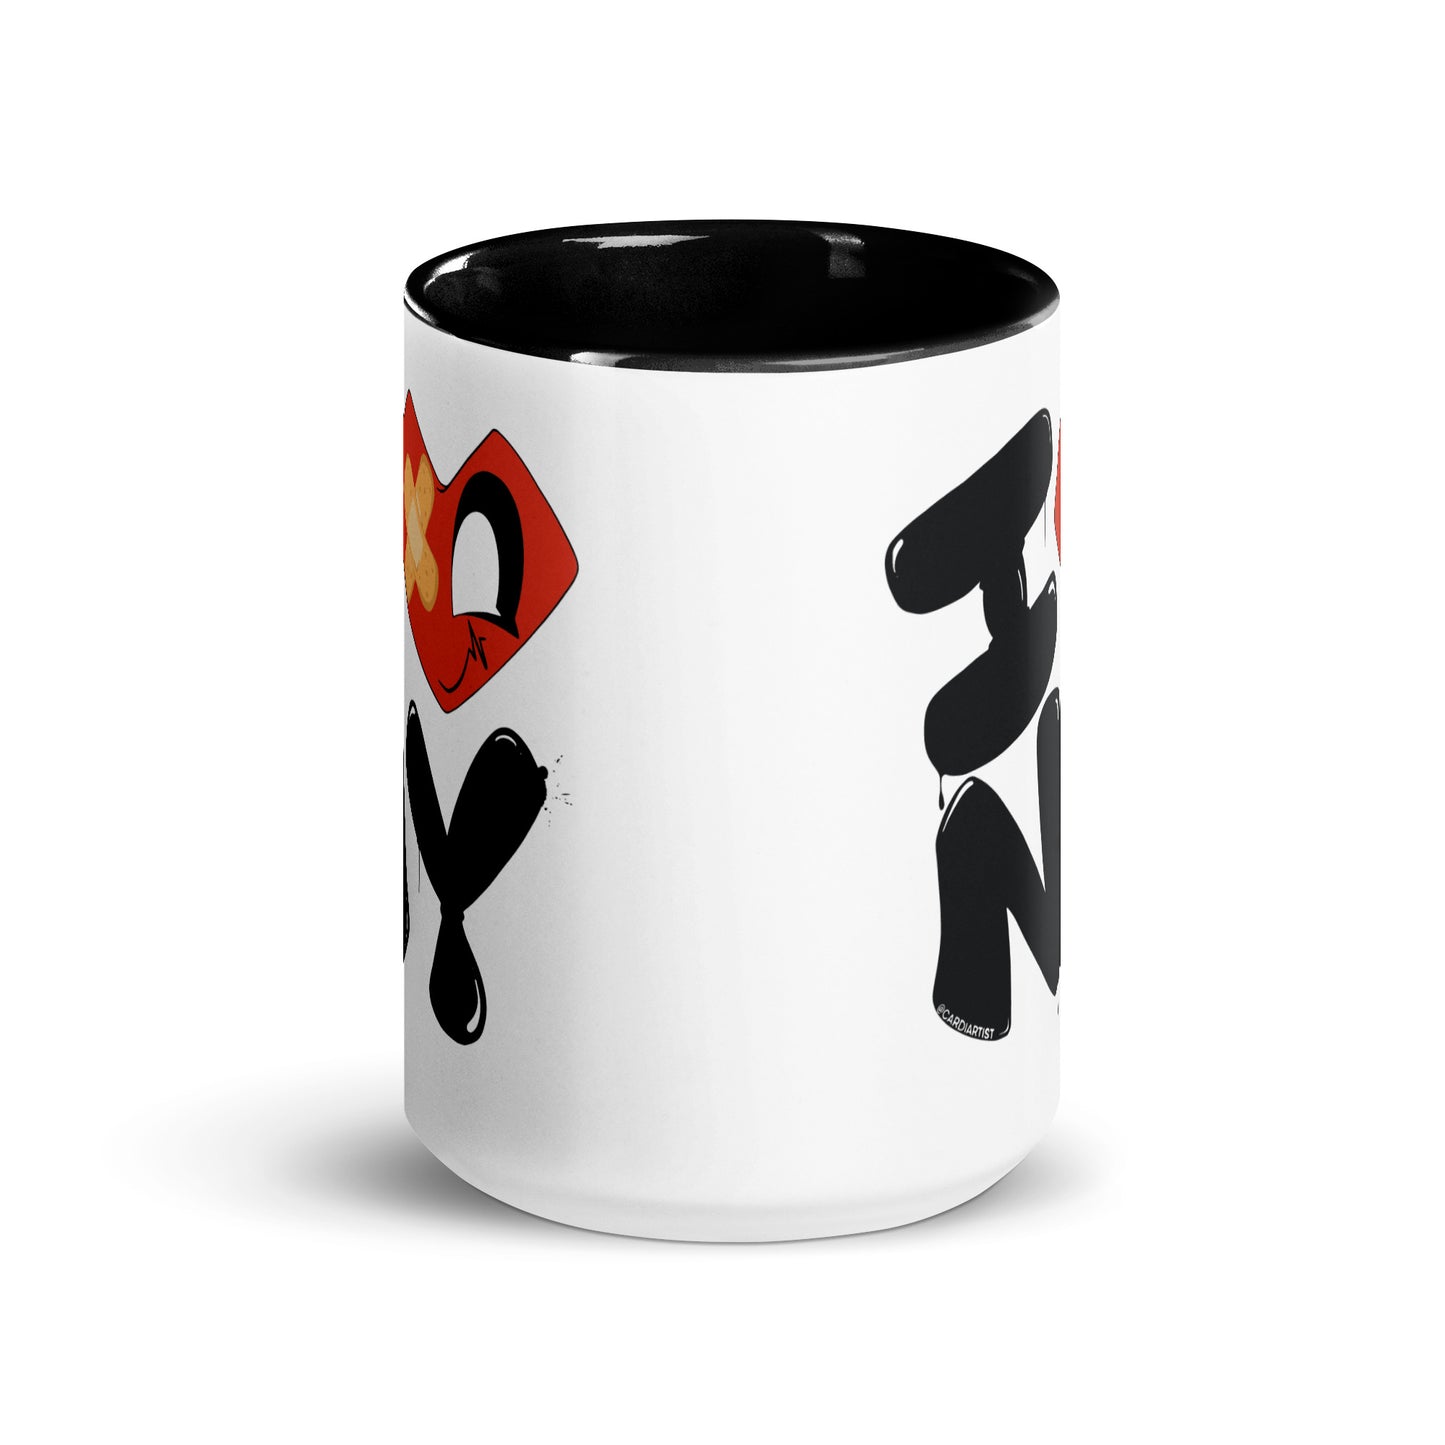 I Heart NY Ceramic Mug